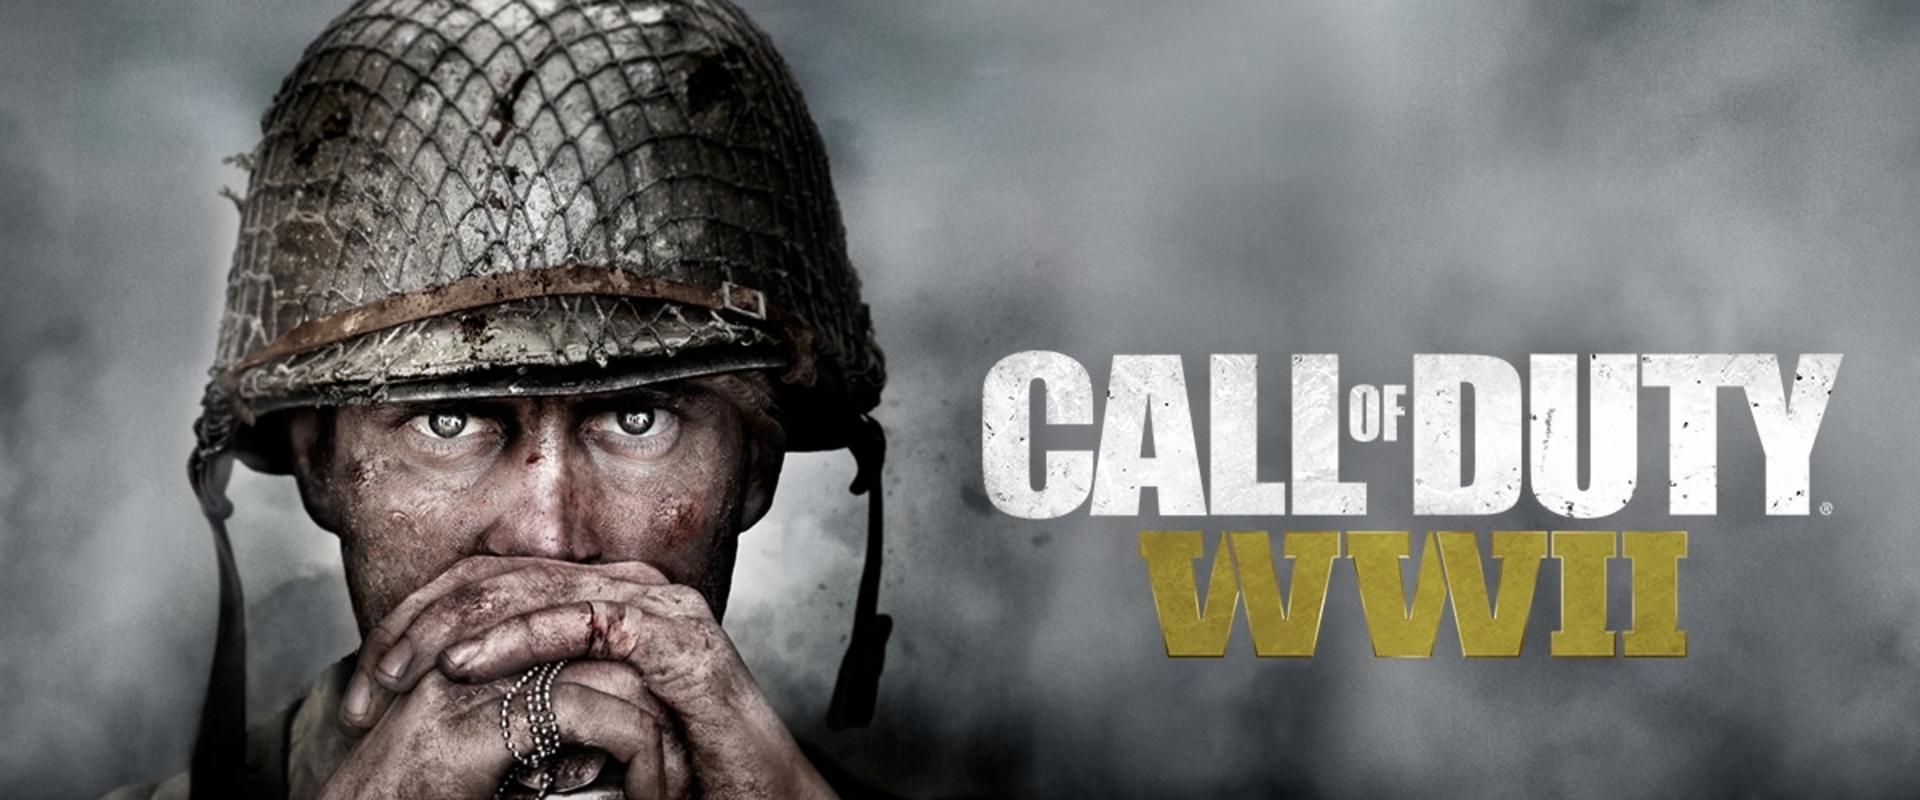 Megindult a küzdelem a Call of Duty: WWII hackereivel